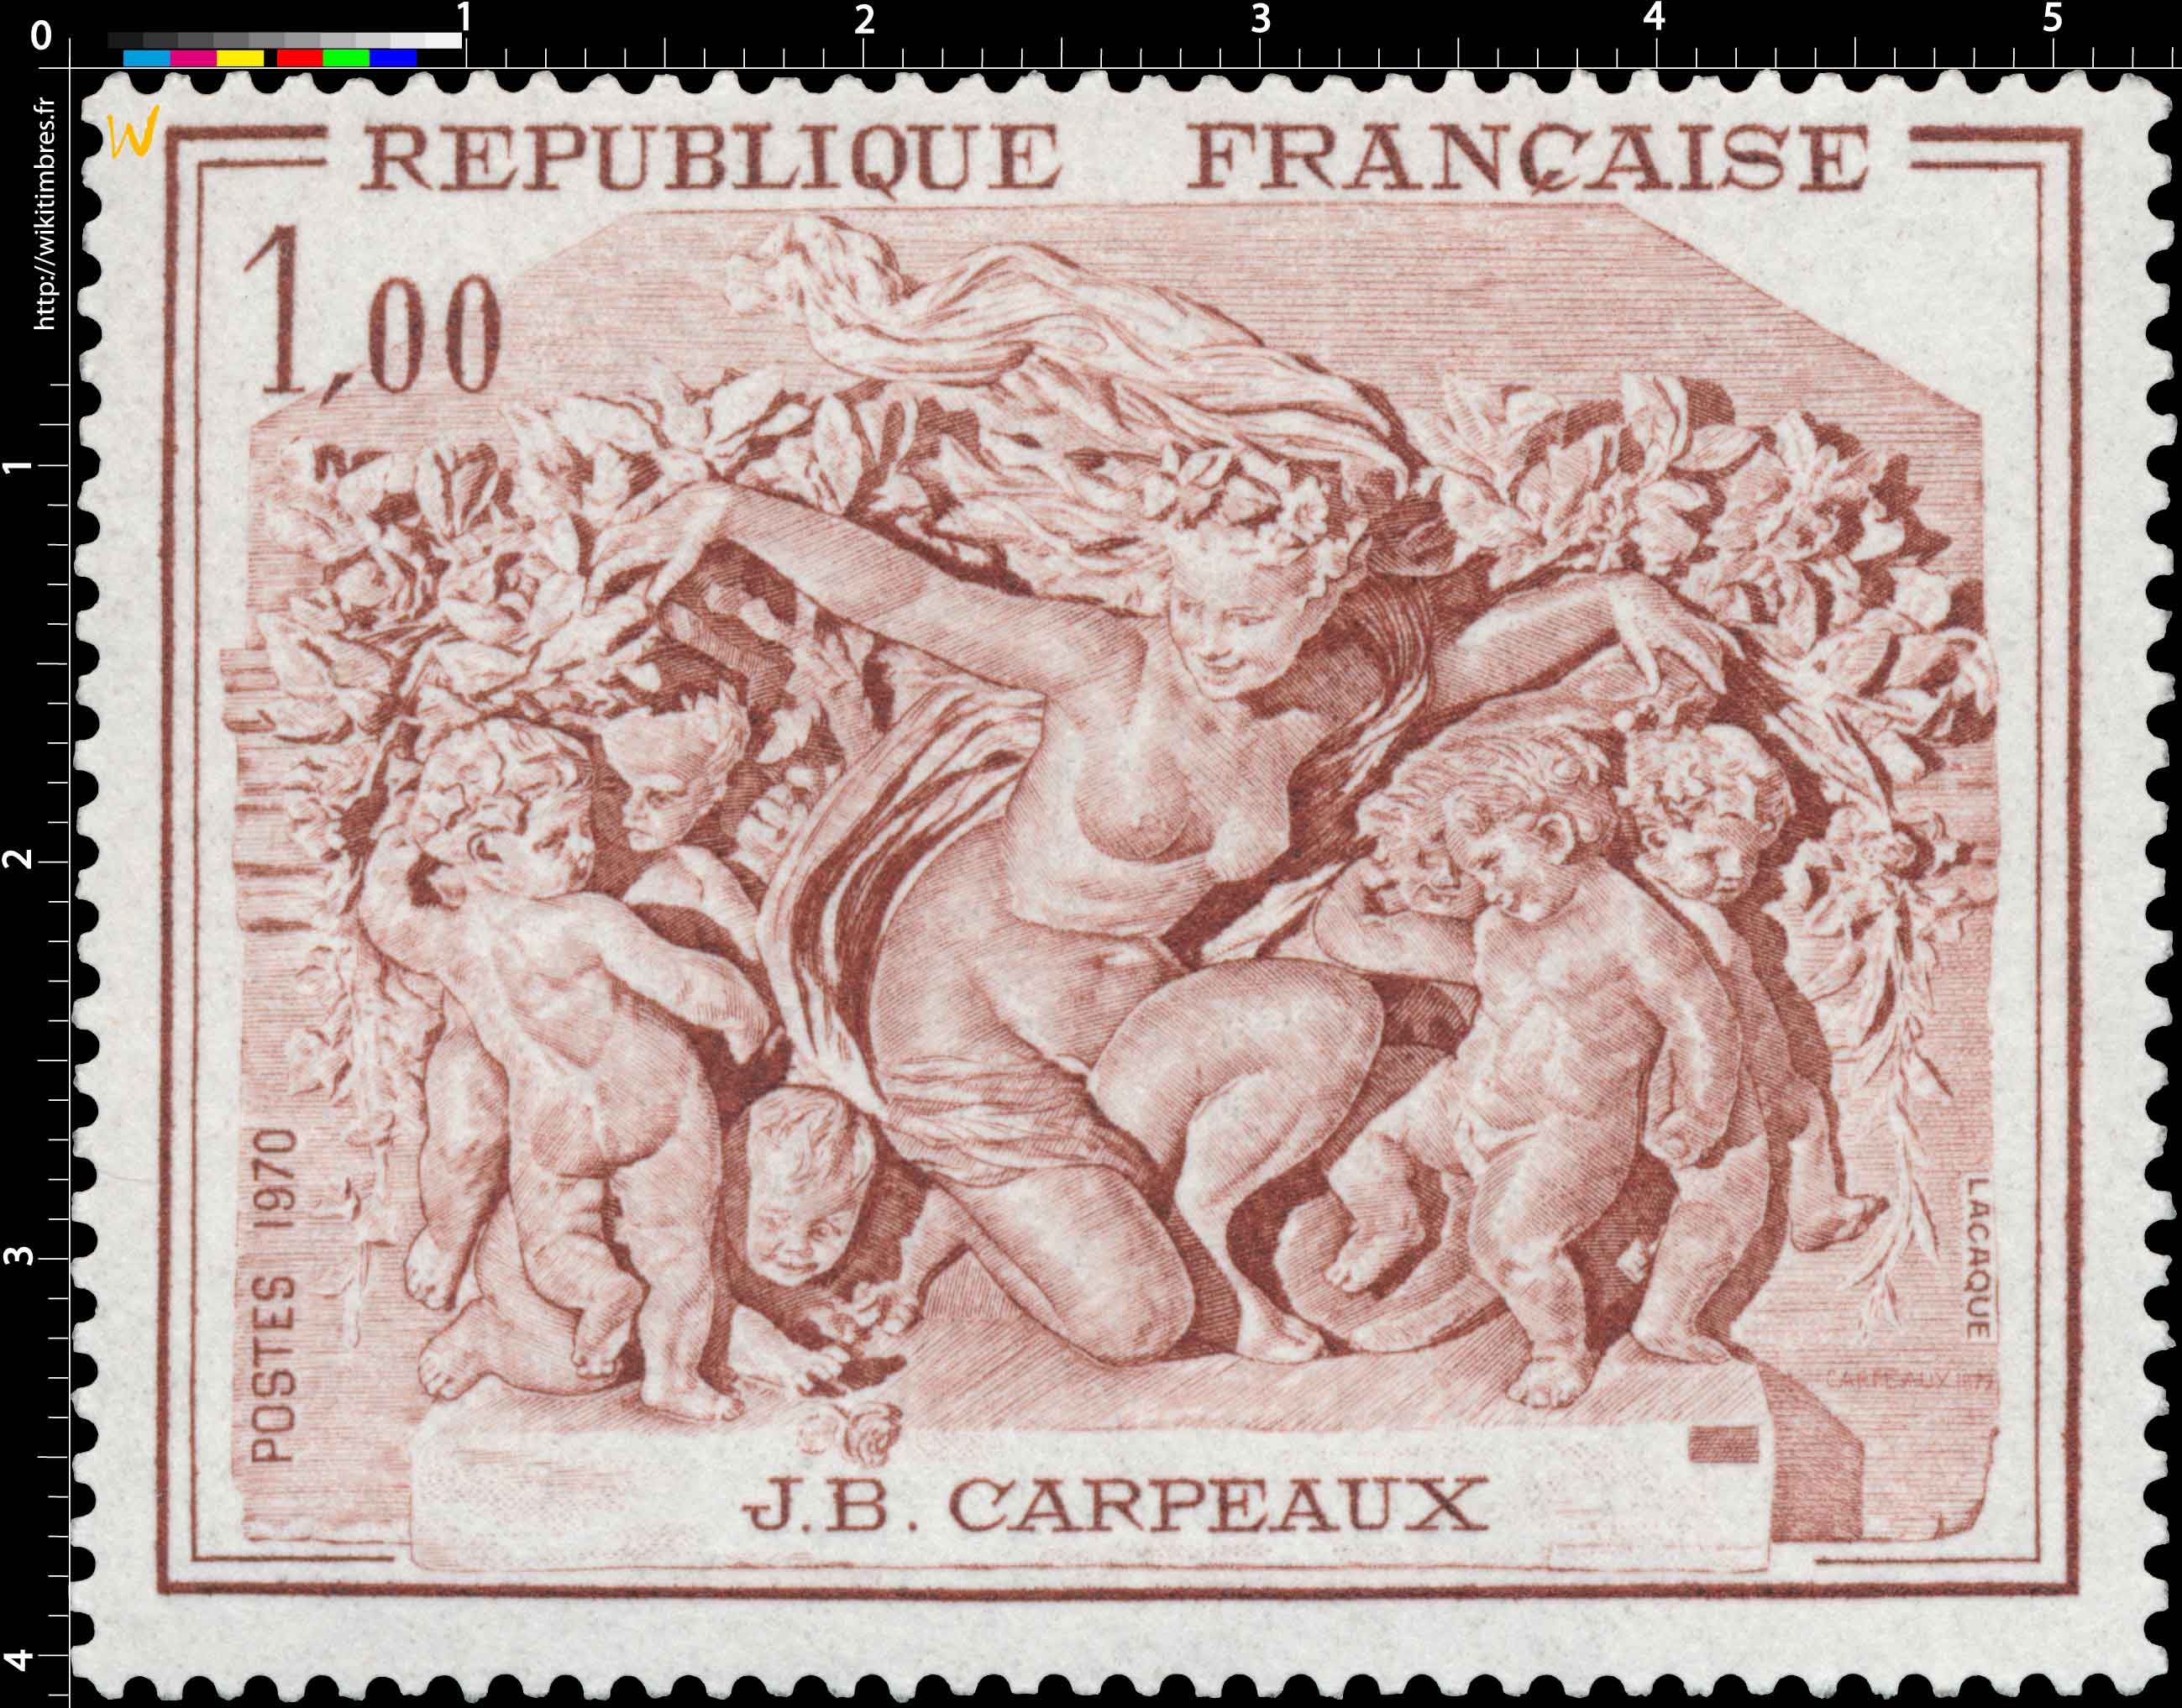 1970 J.B. CARPEAUX